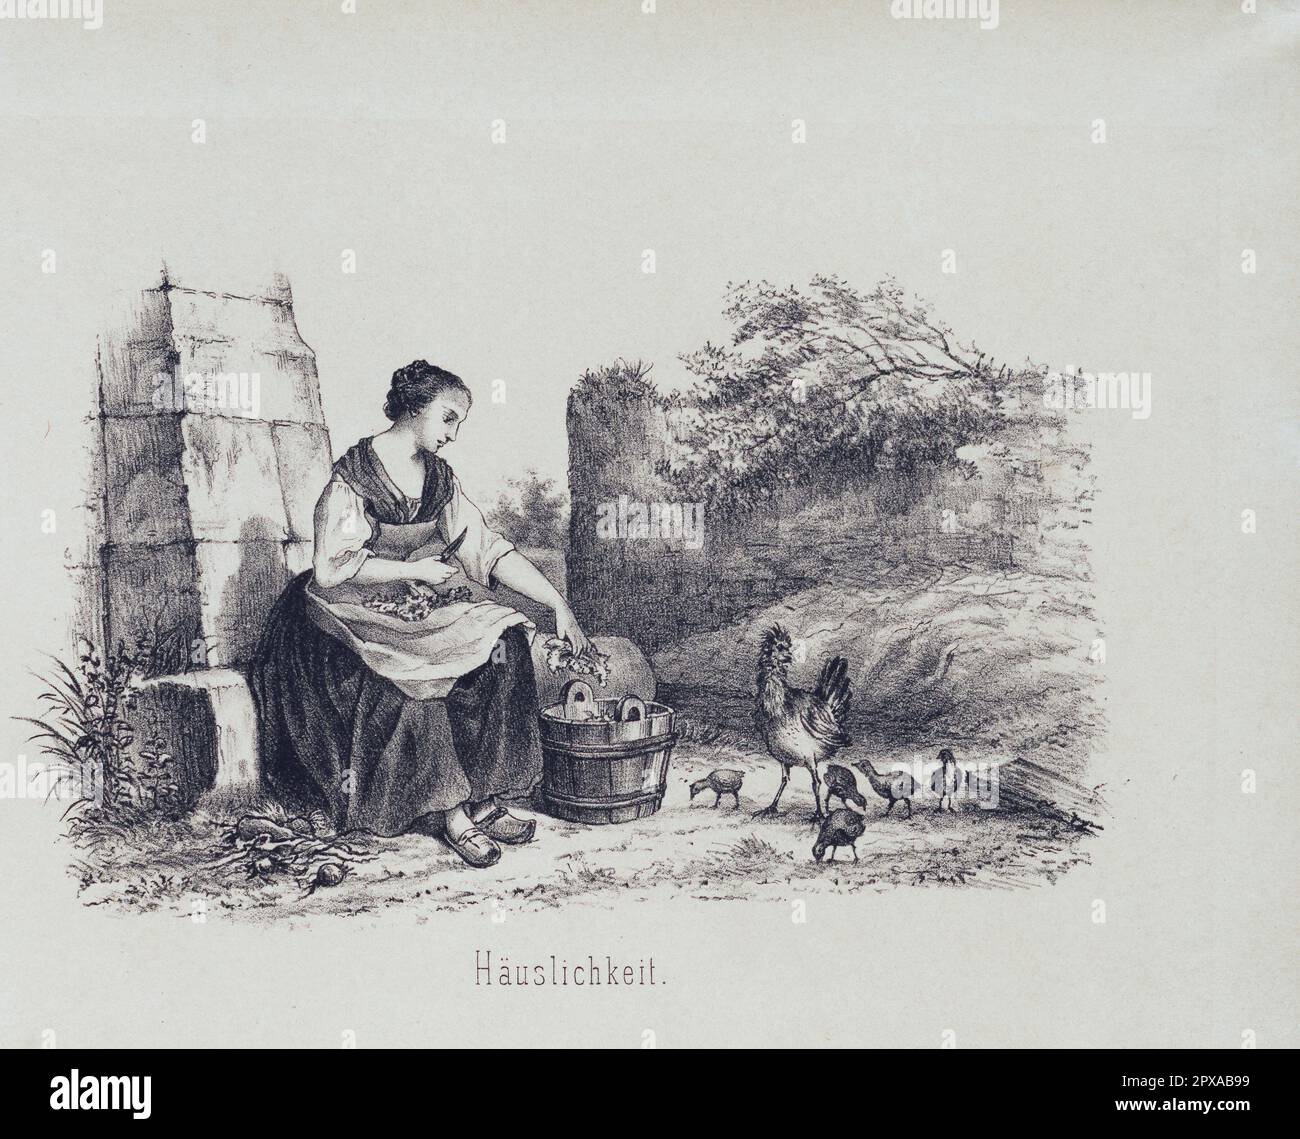 Gravure allemande d'époque : vie rurale, 1860 Banque D'Images